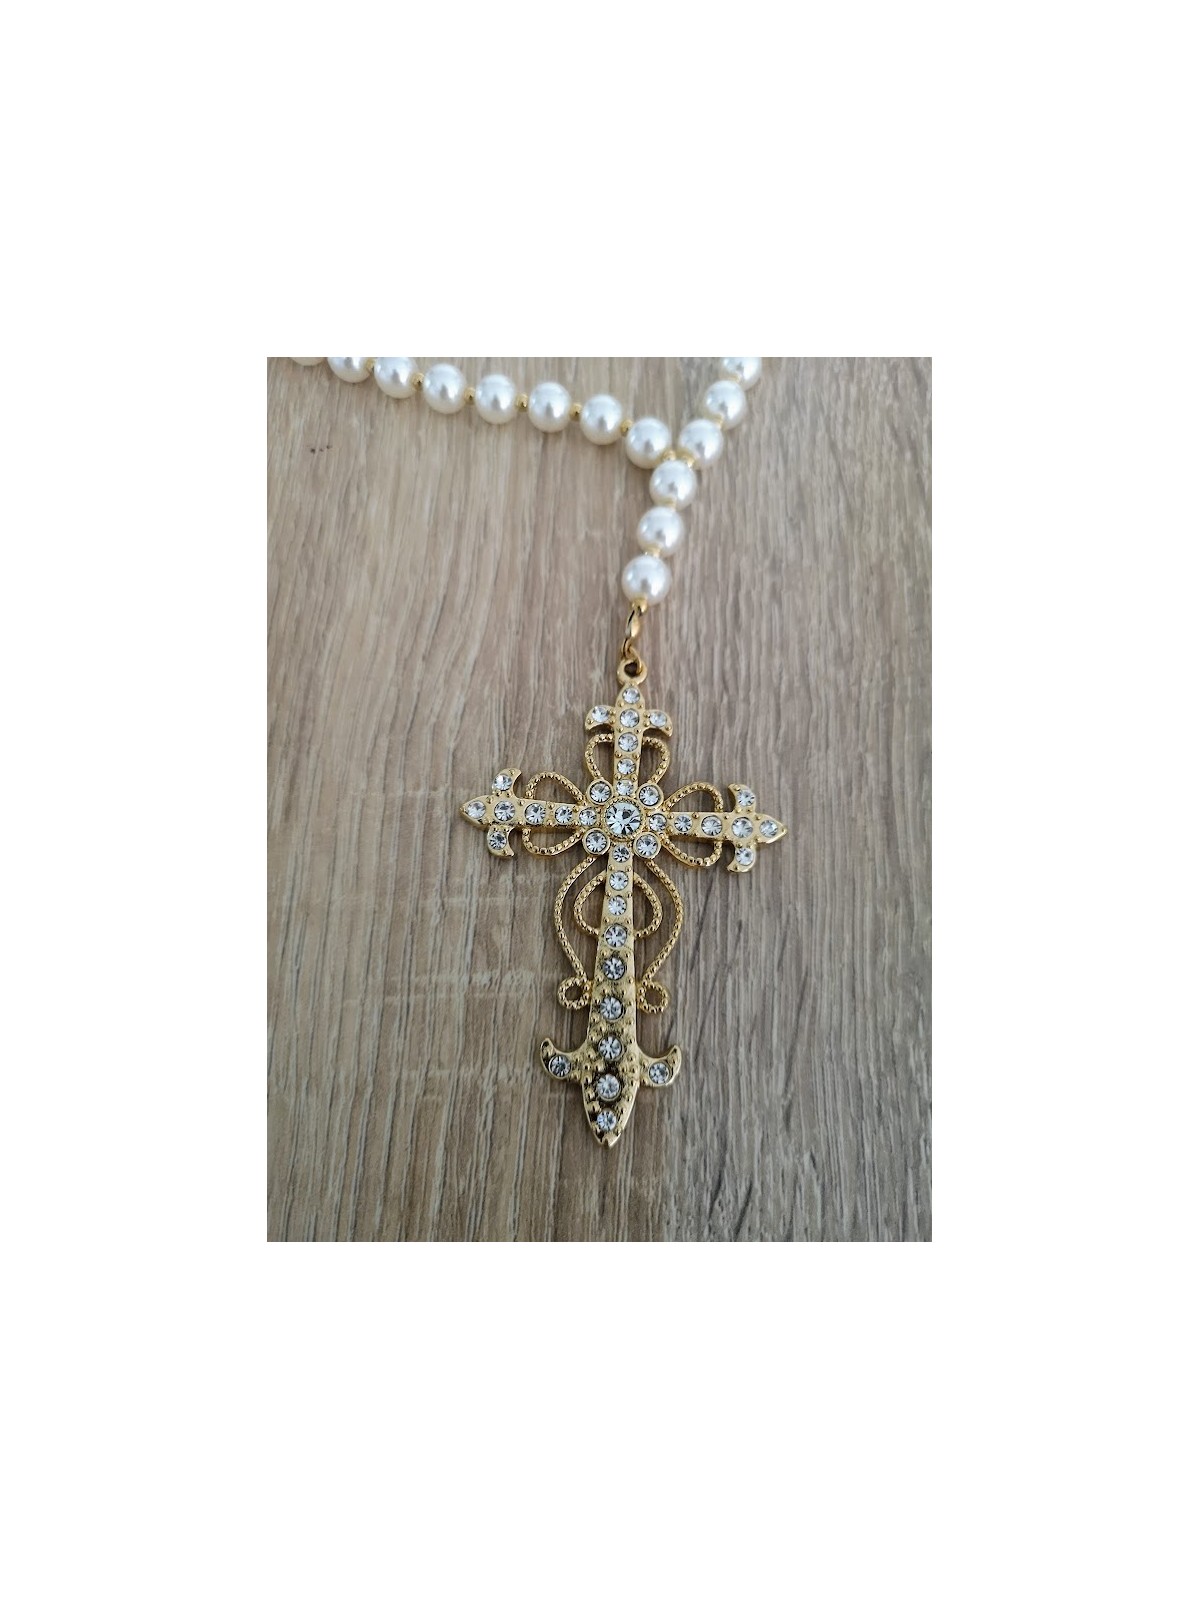 Collier long pendentif croix avec perles nacrées l 2 vue croix l TIlleulmenthe mode boutique de vêtements femme en ligne